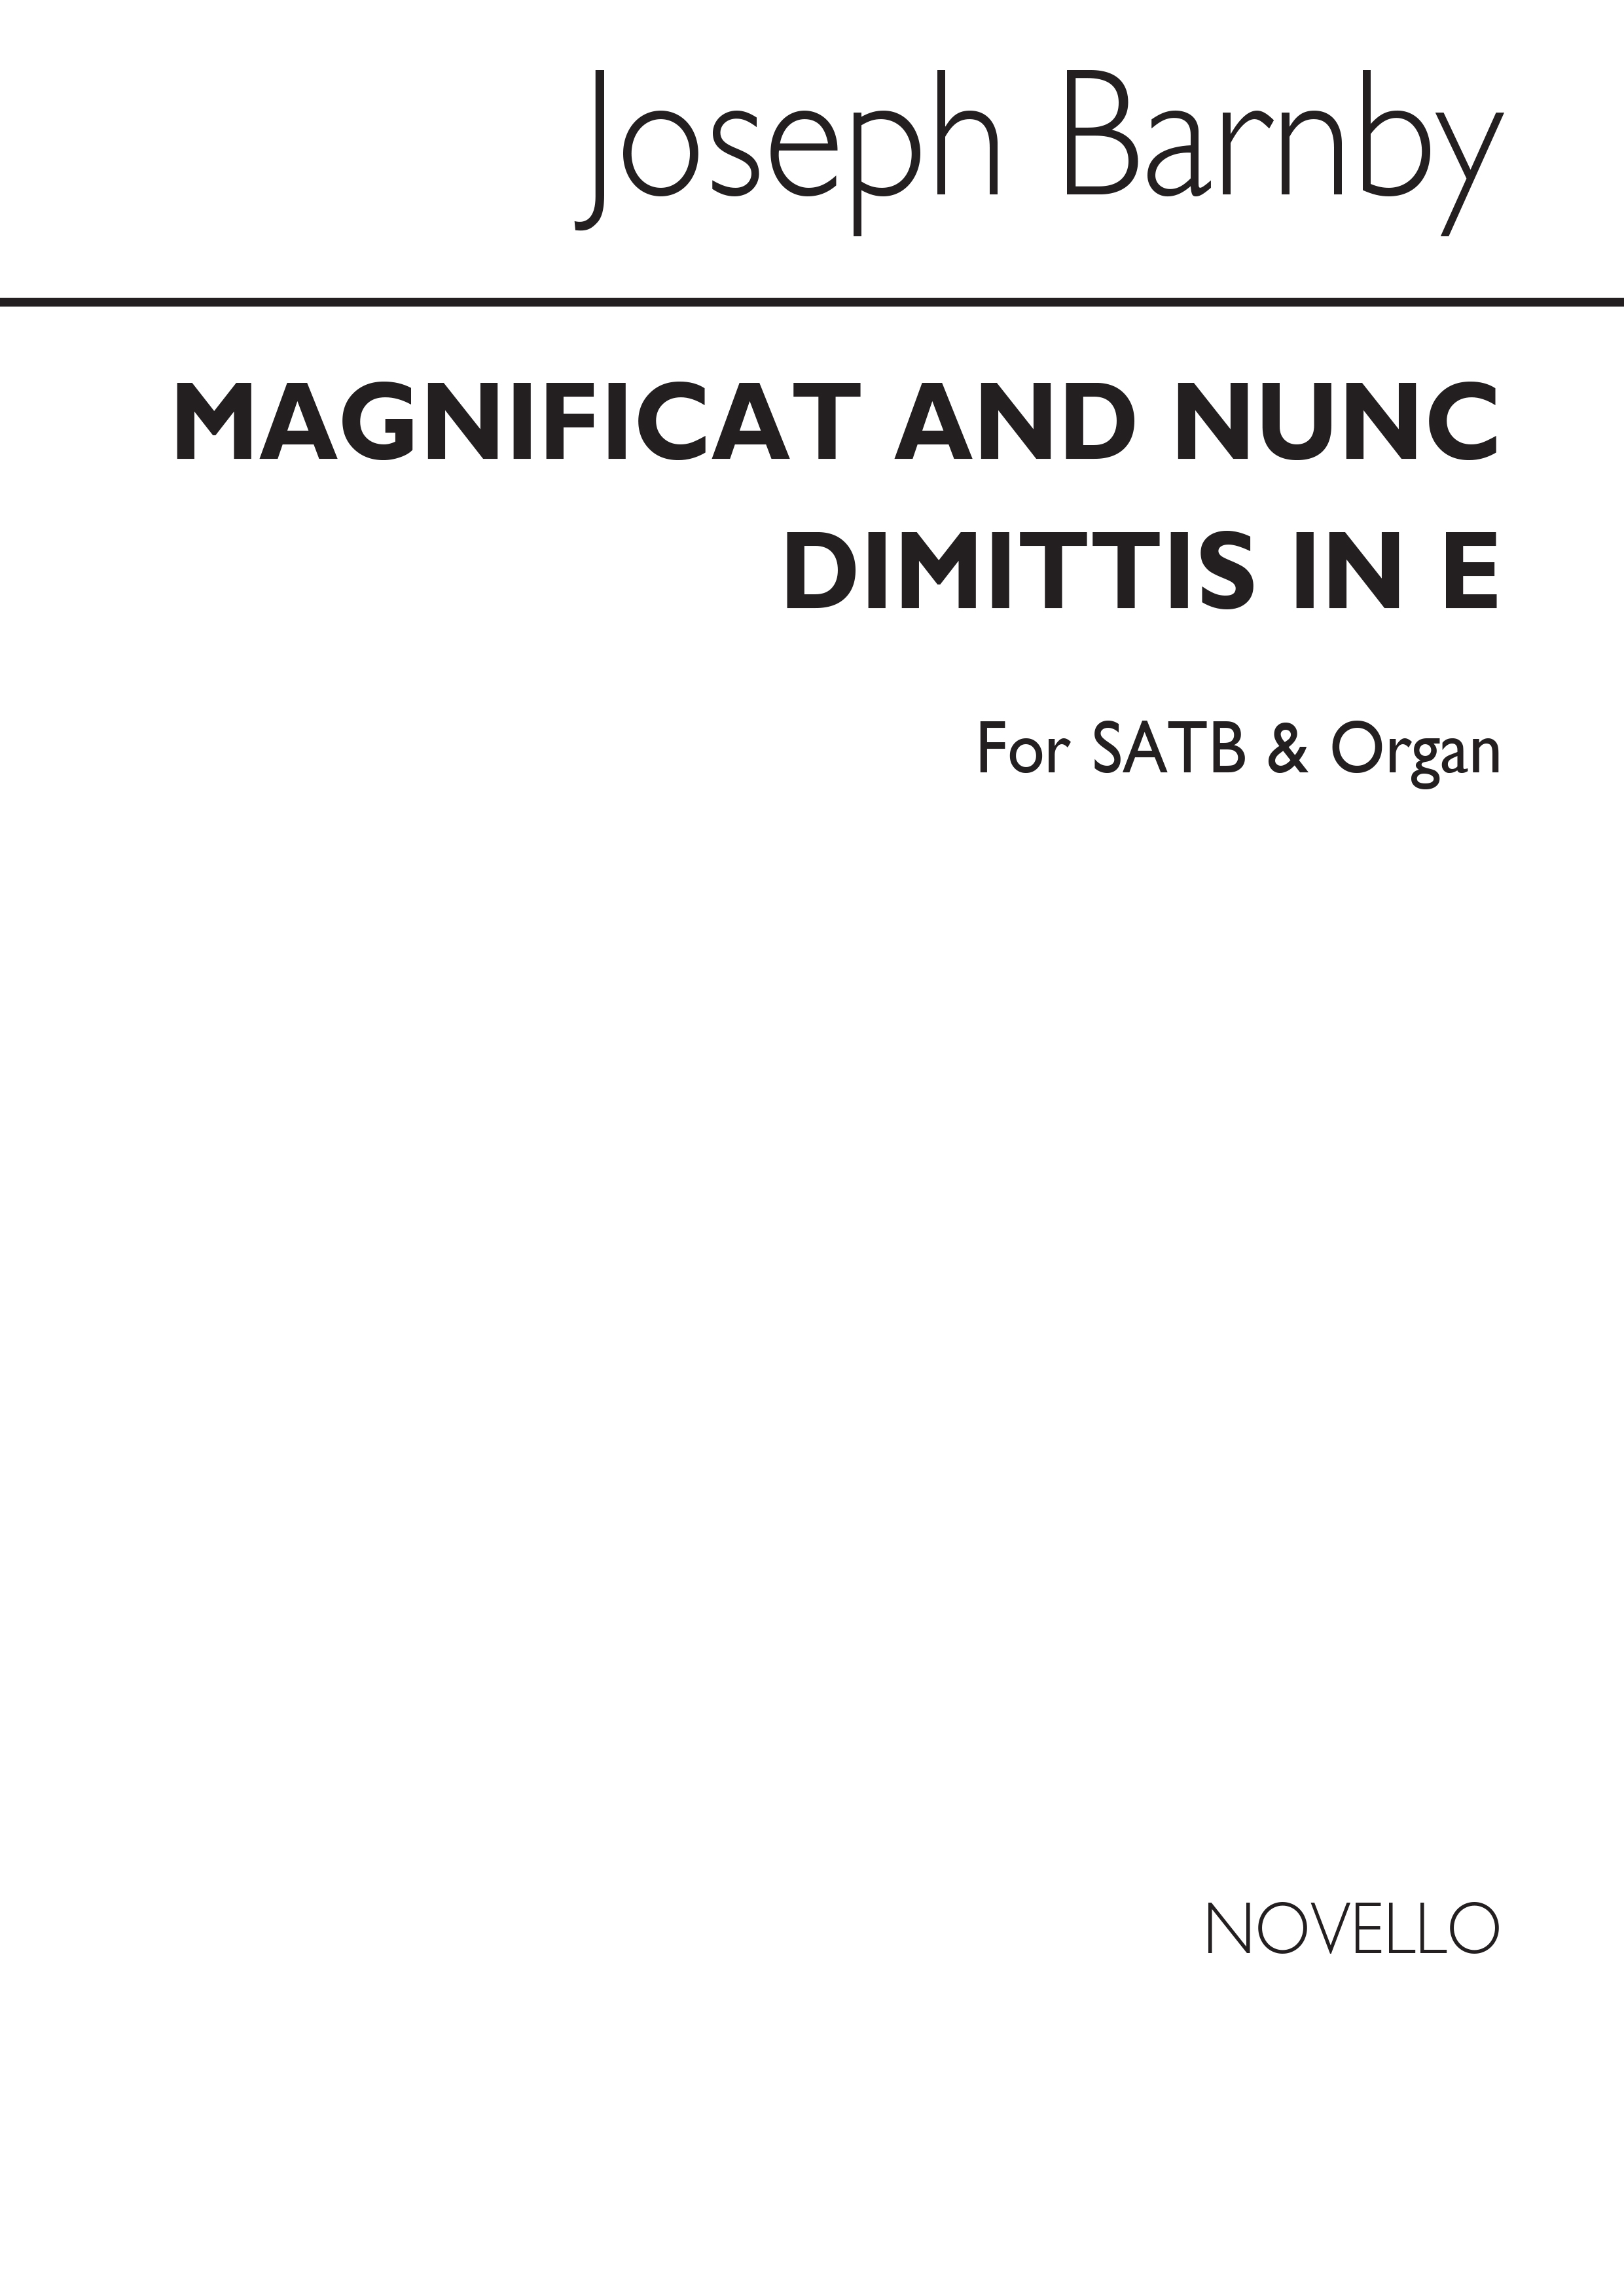 Joseph Barnby: Magnificat and Nunc Dimittis in E